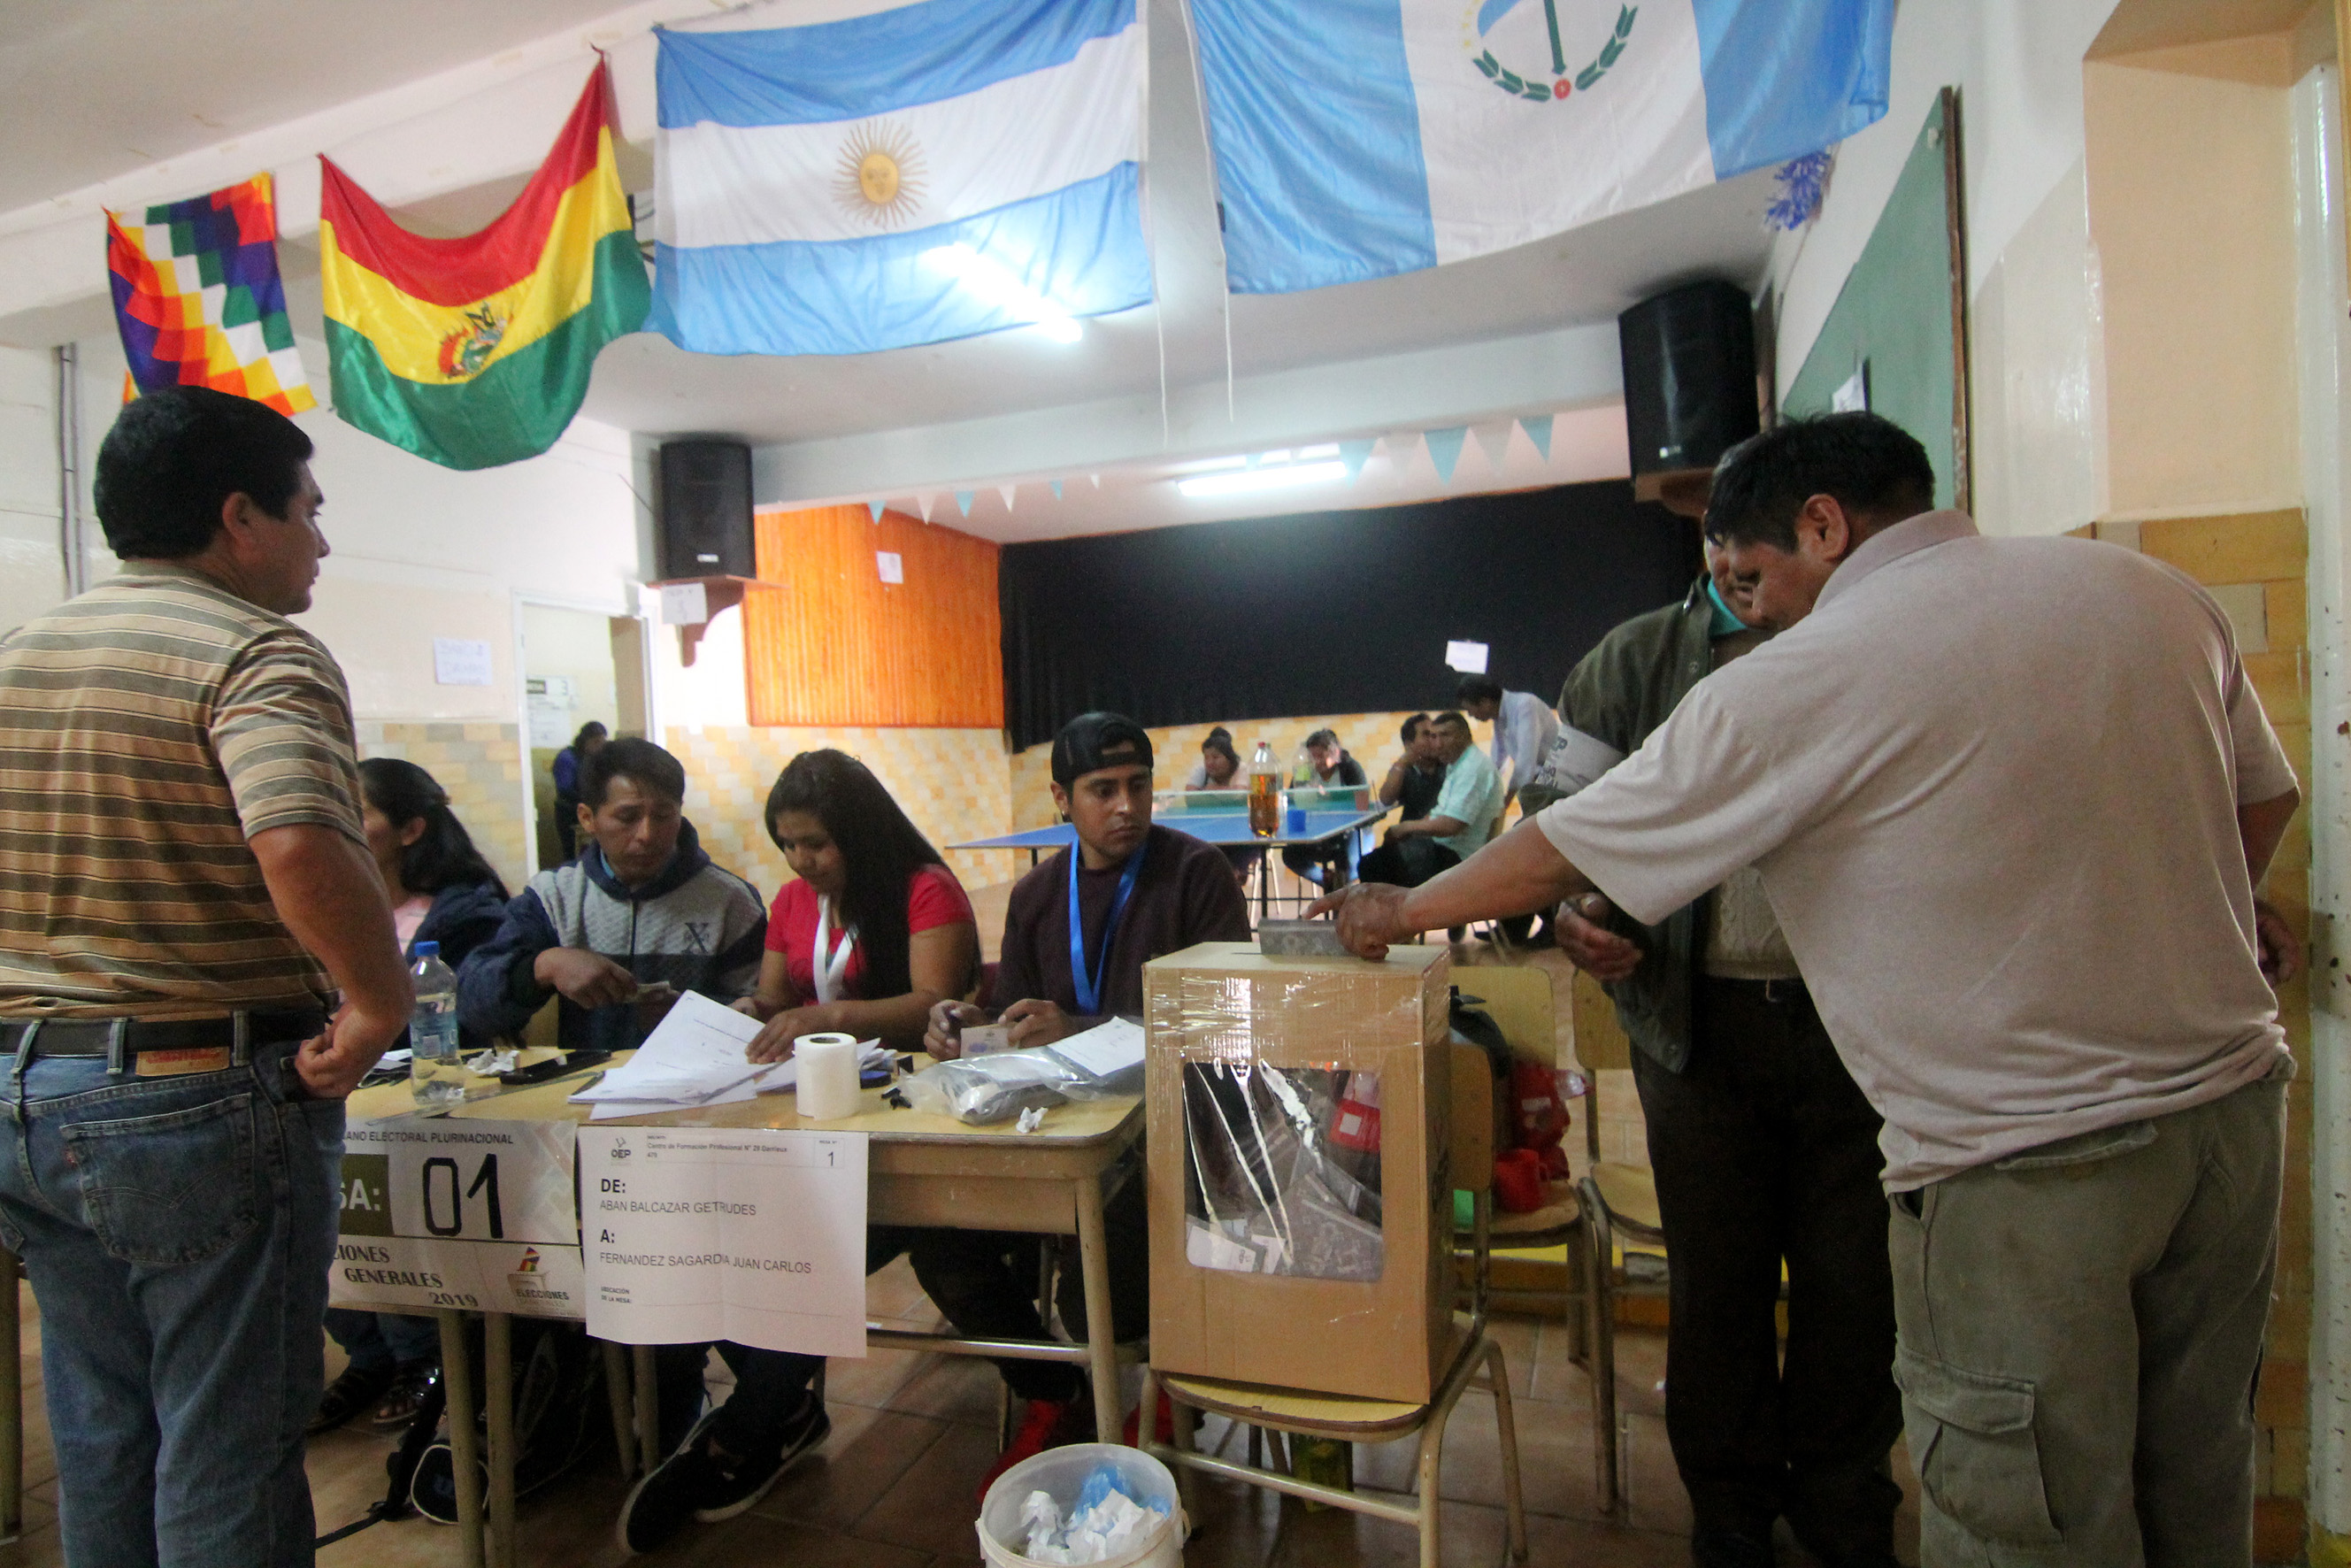 Los ciudadanos bolivianos de la región emitiendo su voto en la urna. Foto: archivo Oscar Livera